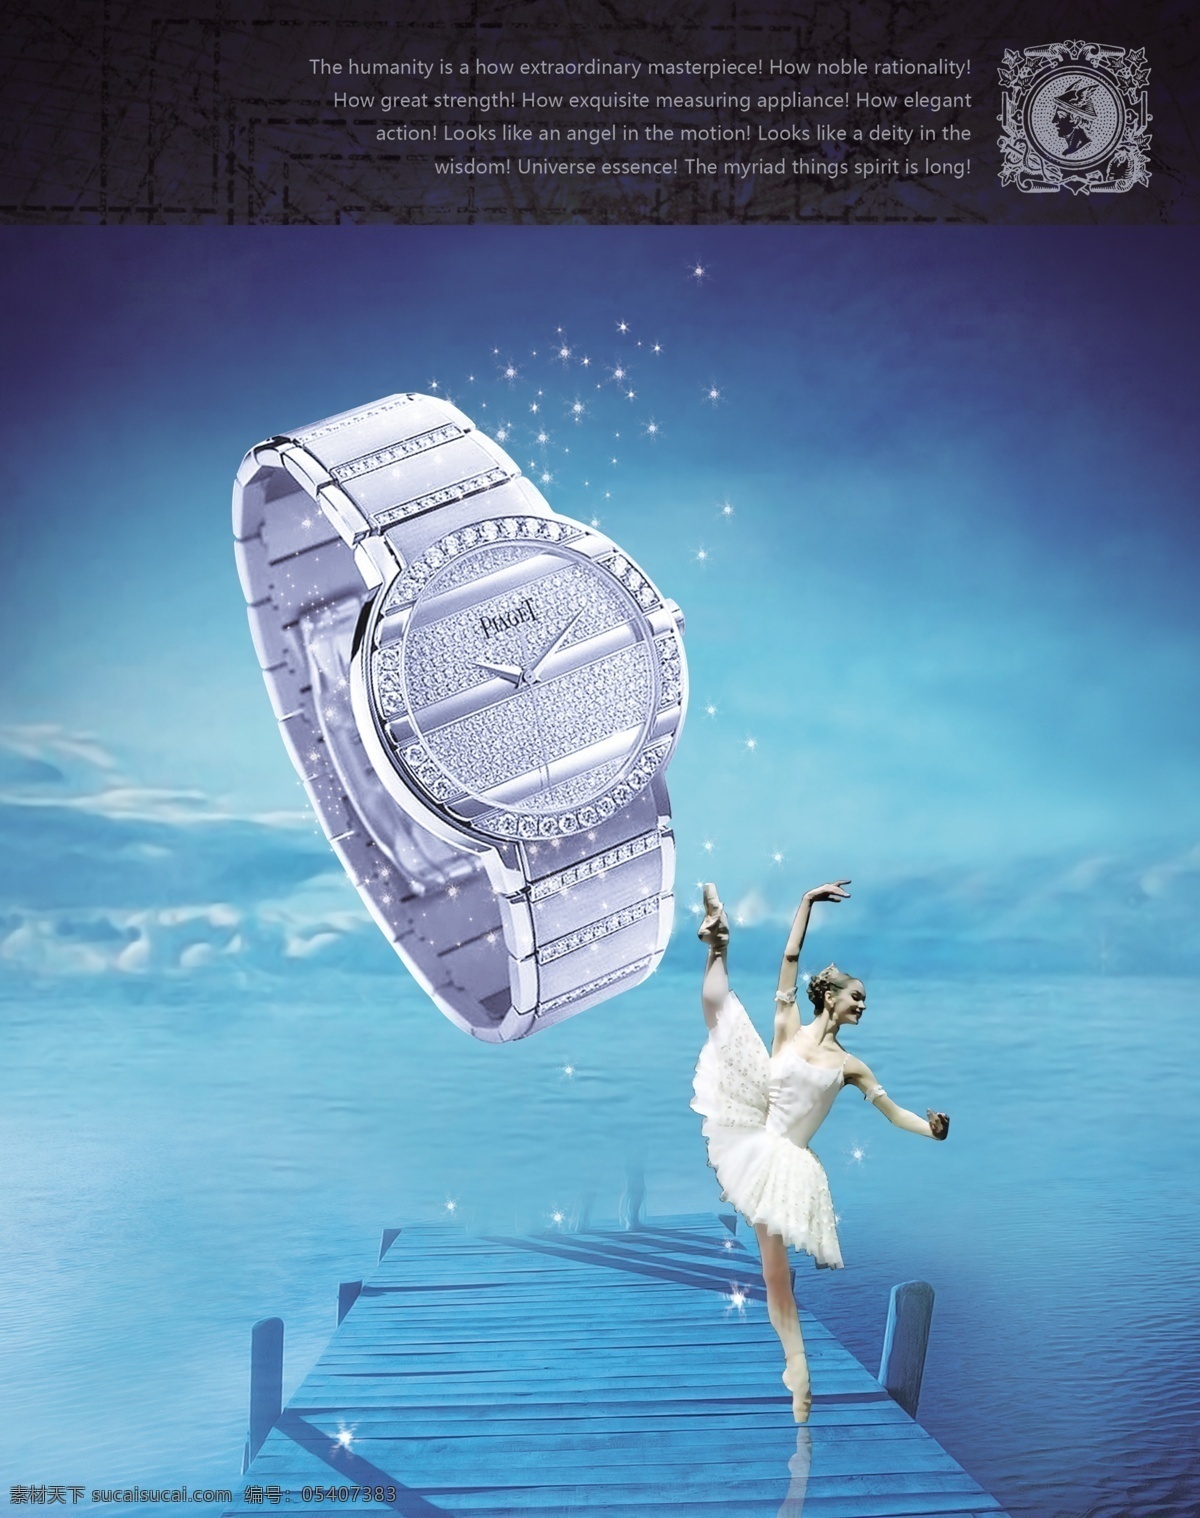 手表 表 高档手表 卡通 芭蕾舞 女孩 海 天空 冰川 阶梯 星光 广告设计模板 源文件库